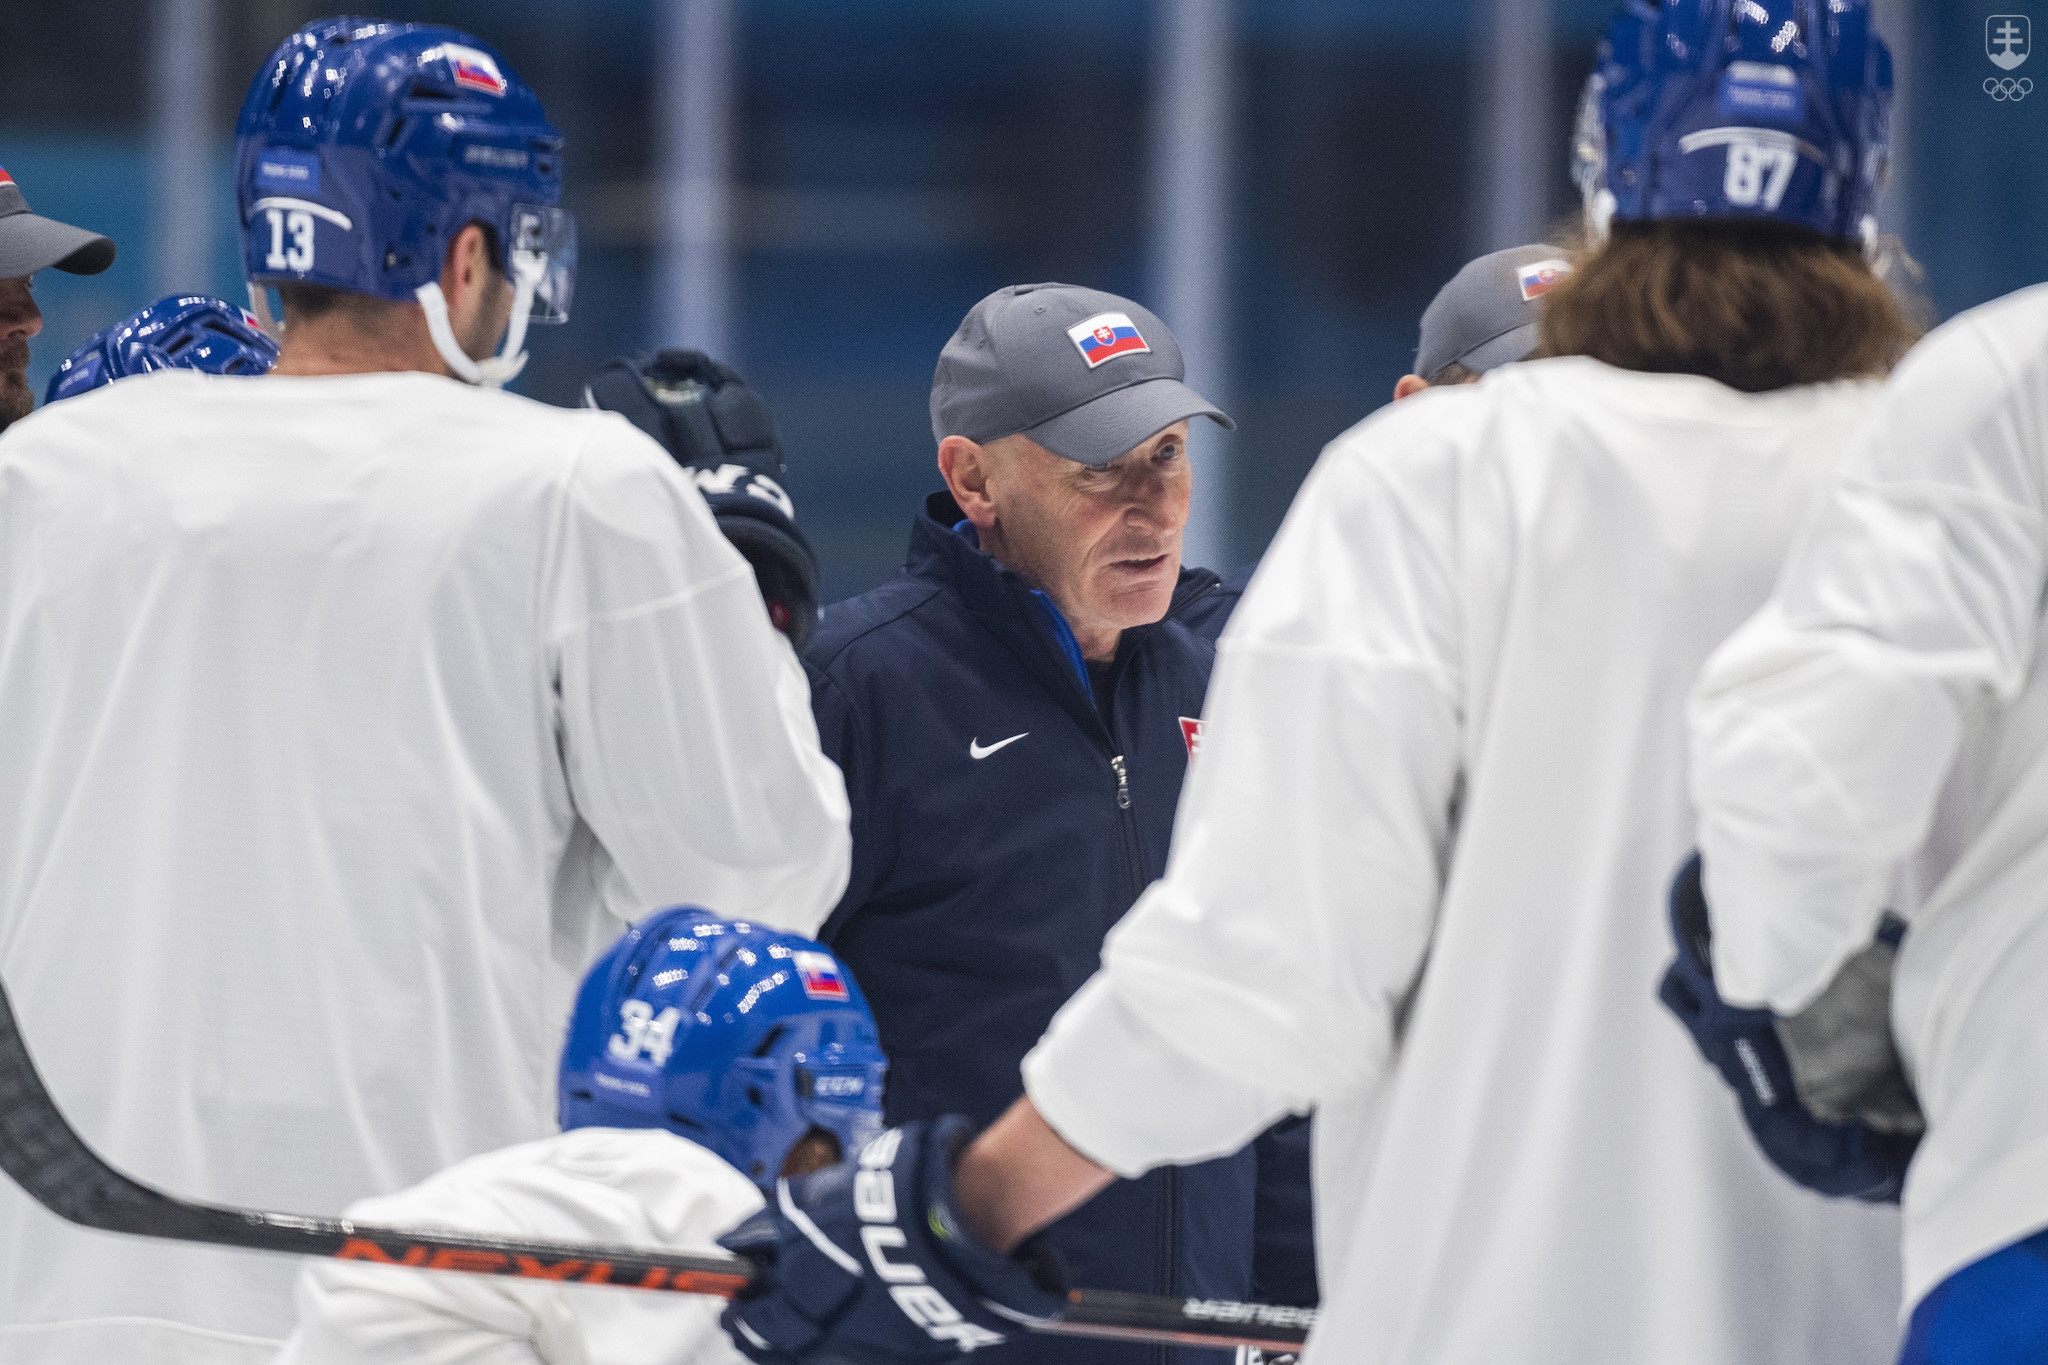 Tréner slovenskej hokejovej reprezentácie Craig Ramsay sa prihovoril hráčom počas tréningu pred semifinálovým zápasom Fínsko - Slovensko na ZOH 2022 v Pekingu.